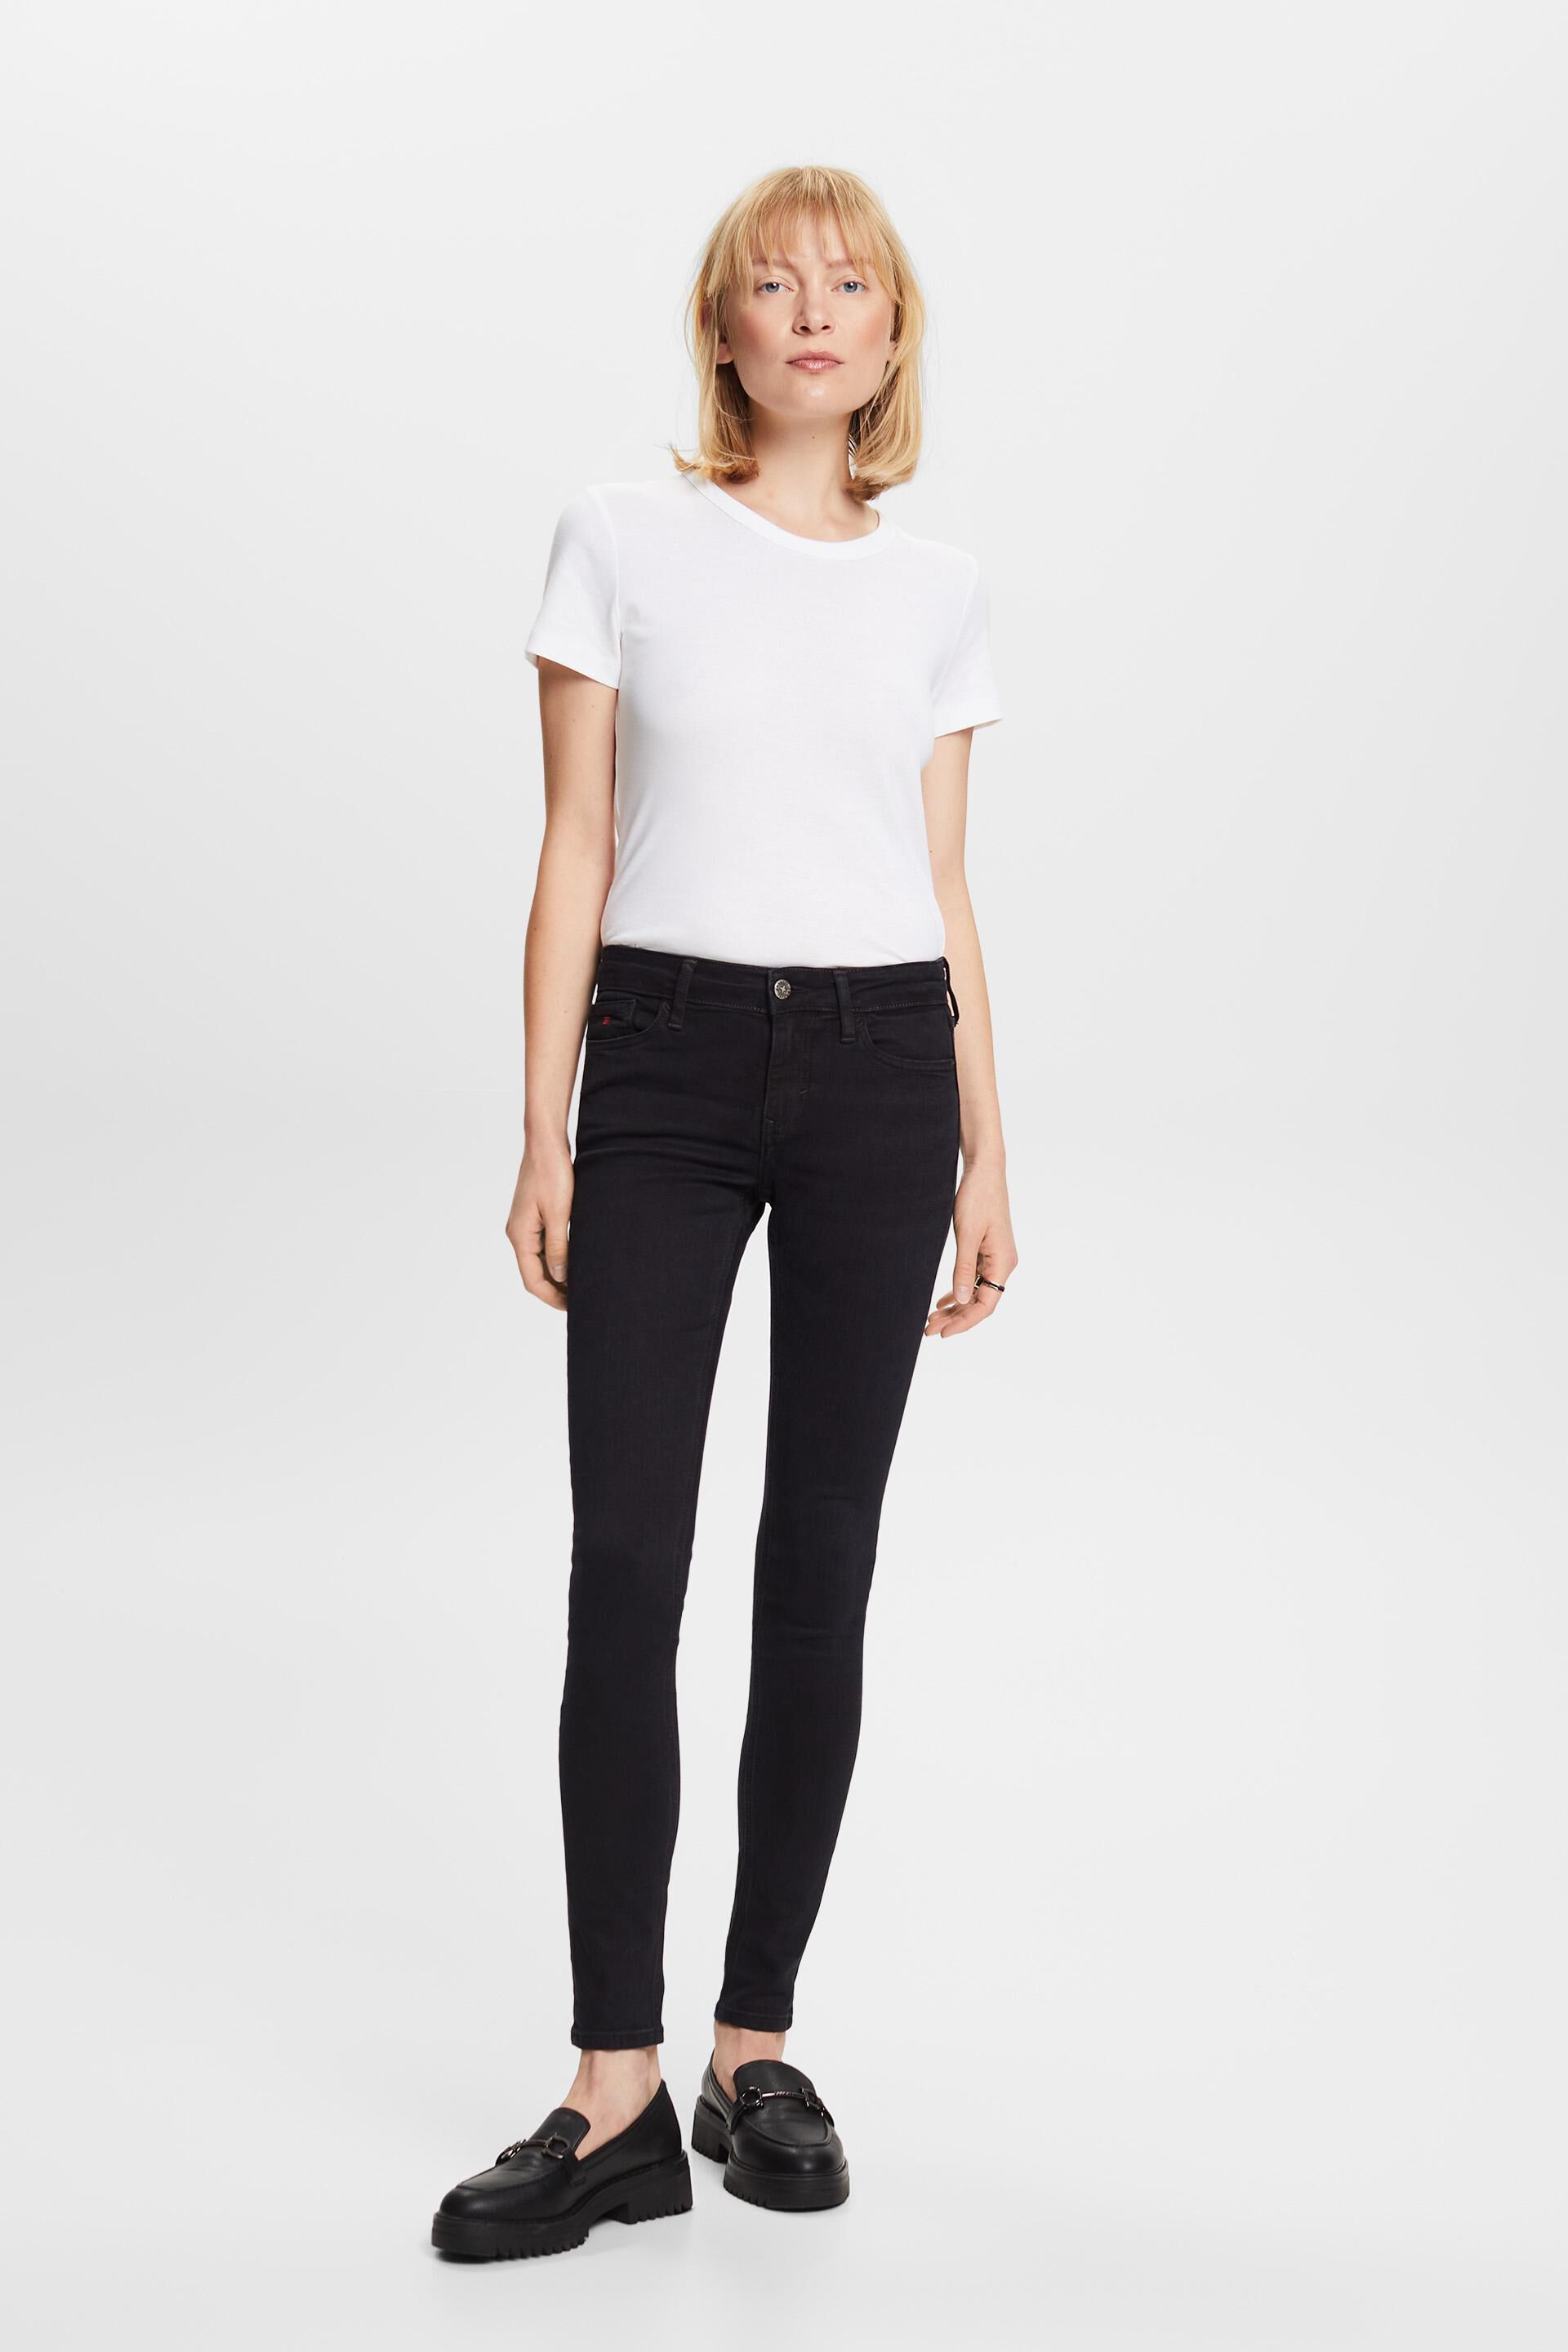 Esprit jeans mid-rise fit skinny Premium